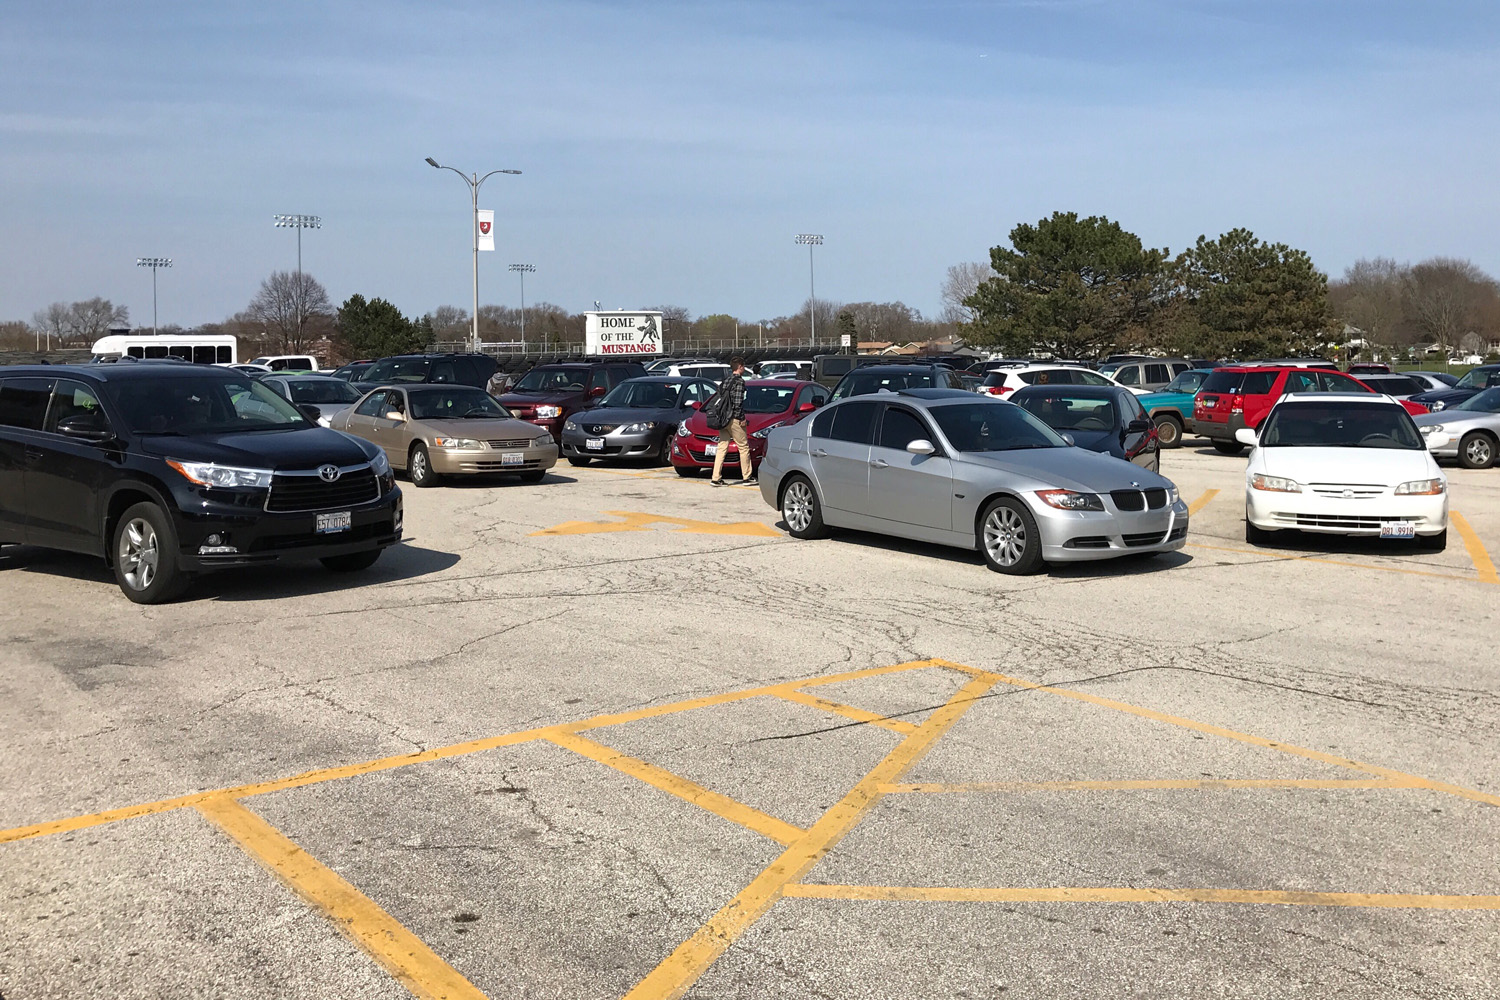 High school parking lot